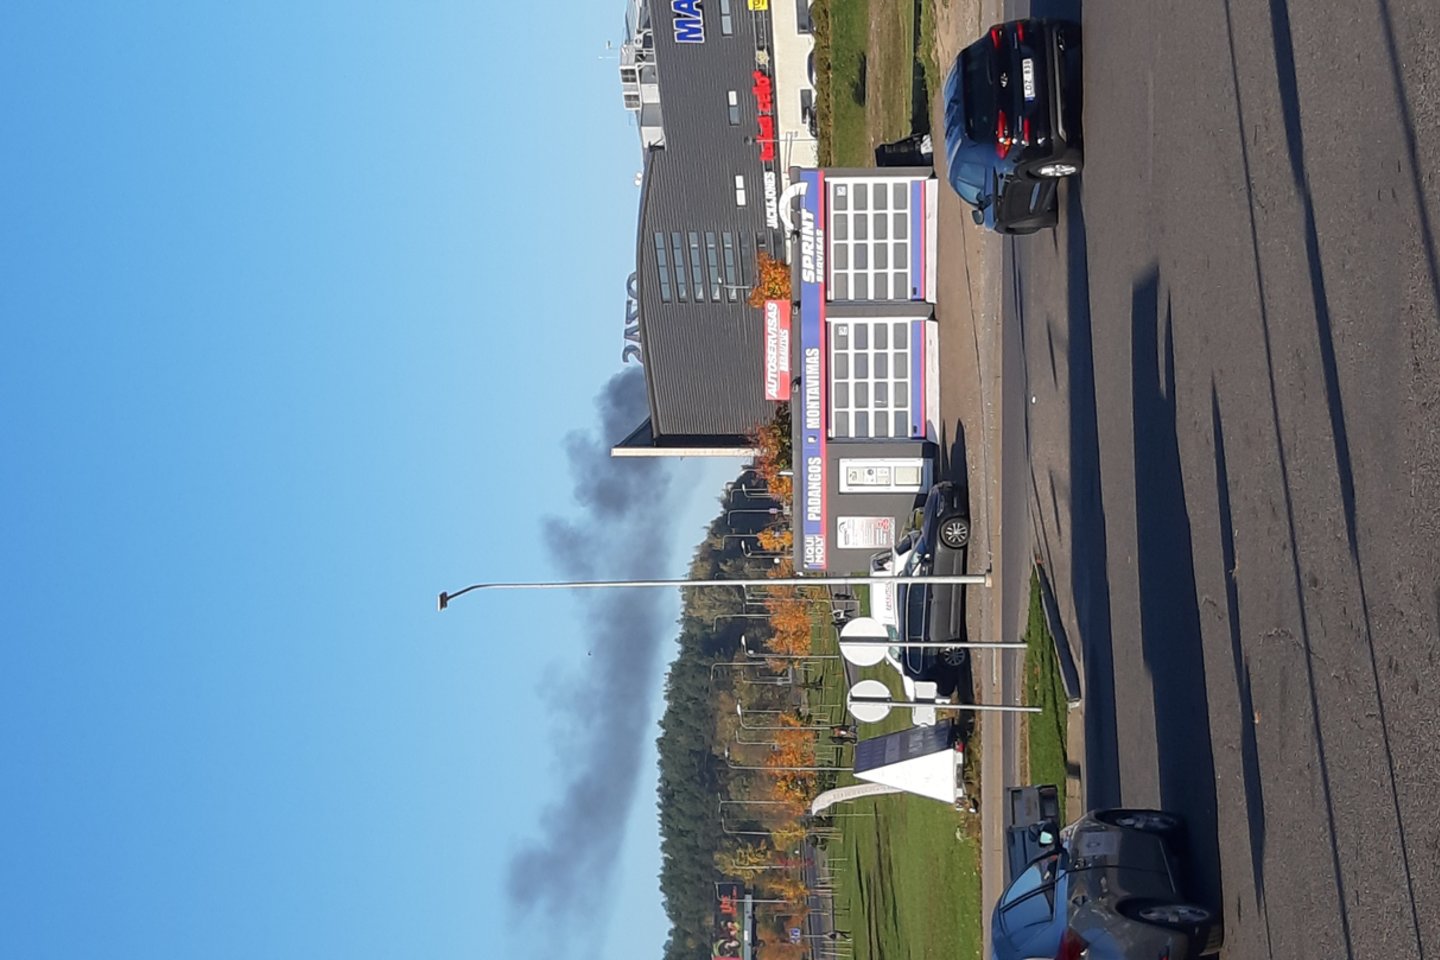  Šeštadienio rytą ant kojų sukelti Vilniaus ugniagesiai: Šeškinės rajone vidury gatvės atvira liepsna degė automobilis.